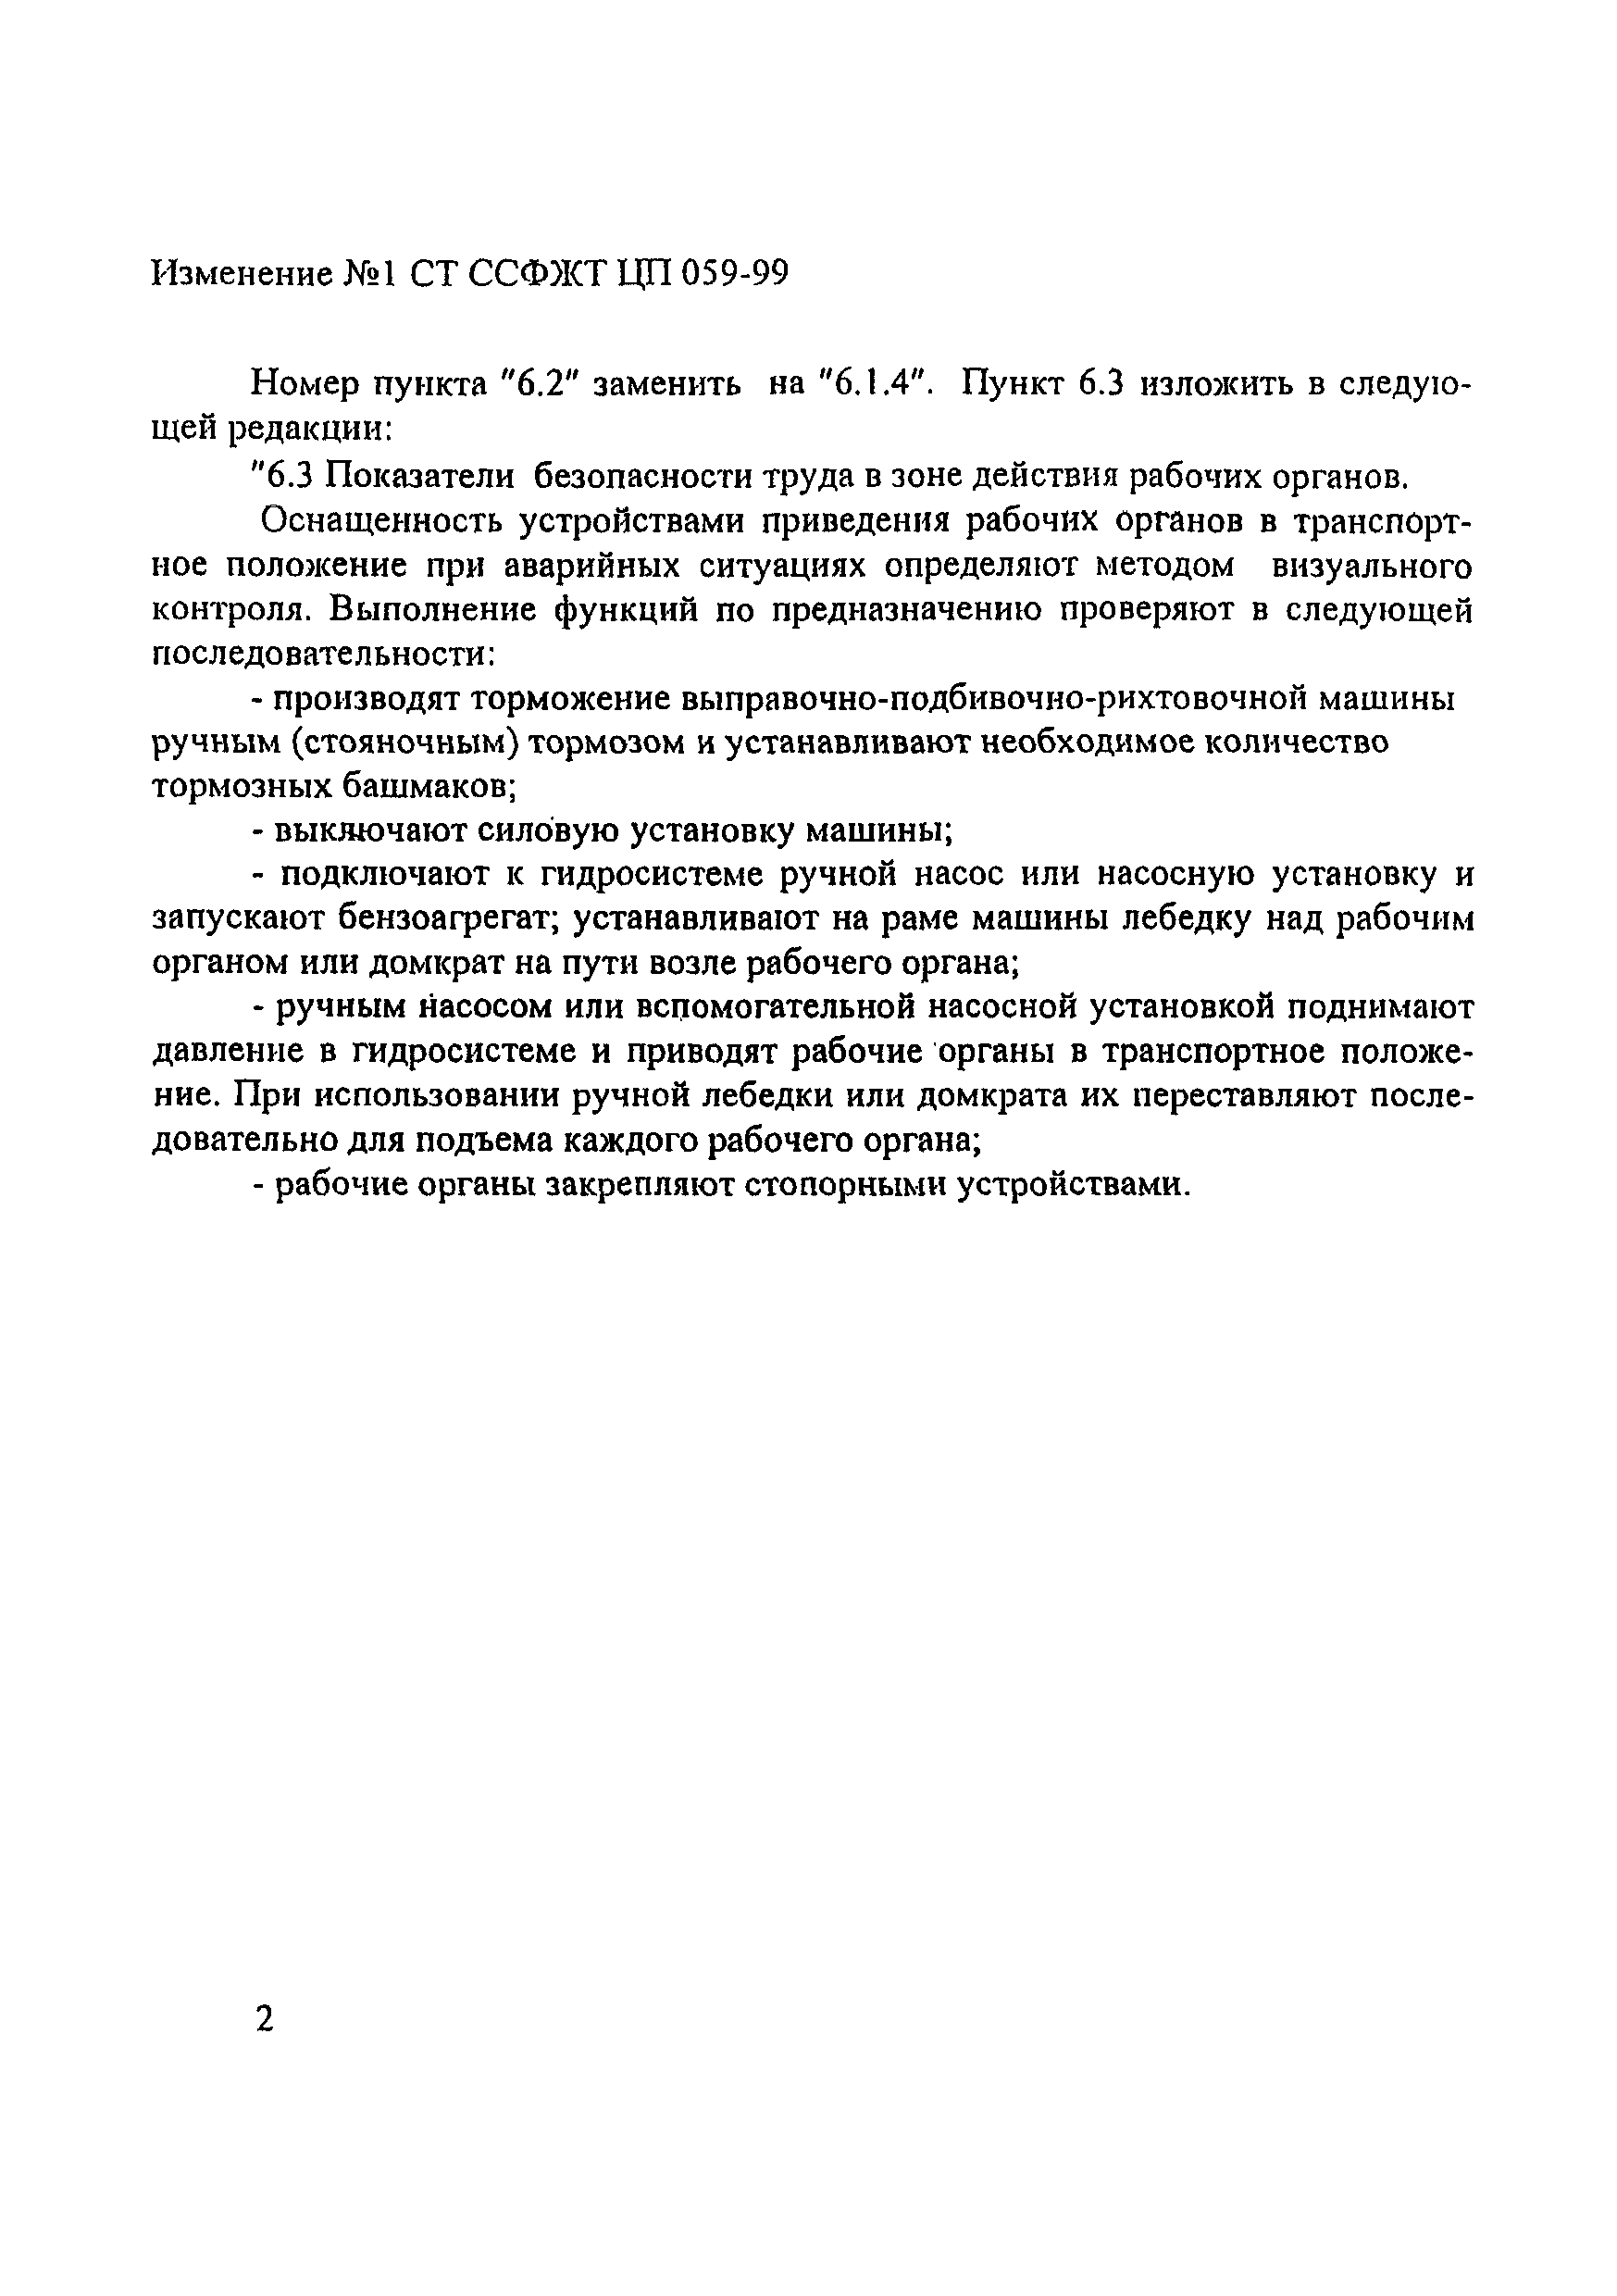 СТ ССФЖТ ЦП 059-99